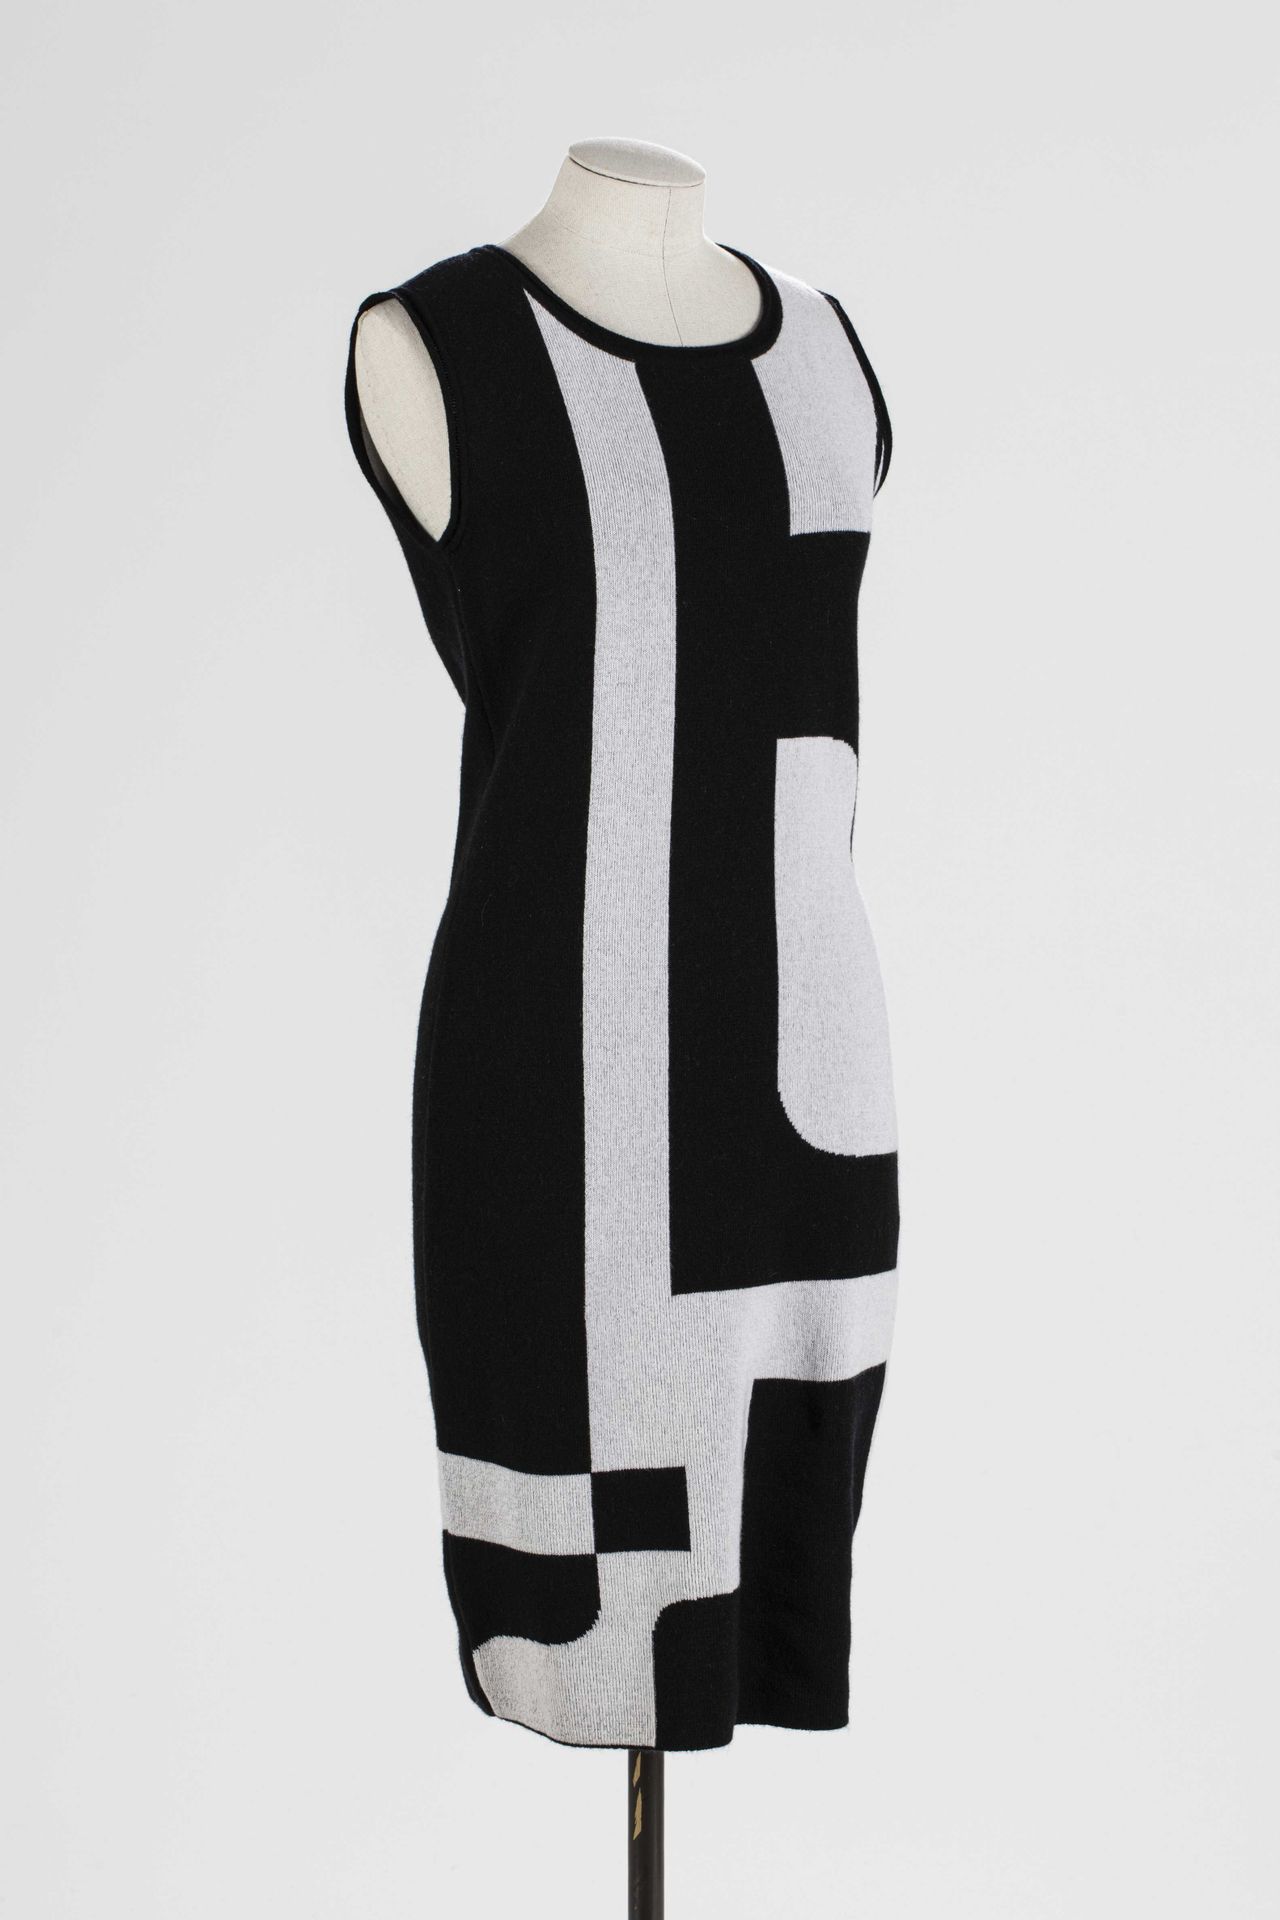 Null ESCADA: 羊毛和粘胶材质的套装，包括一件带有黑白图案的长裙和一件用纽扣固定的小蝙蝠袖的披肩。

T.S